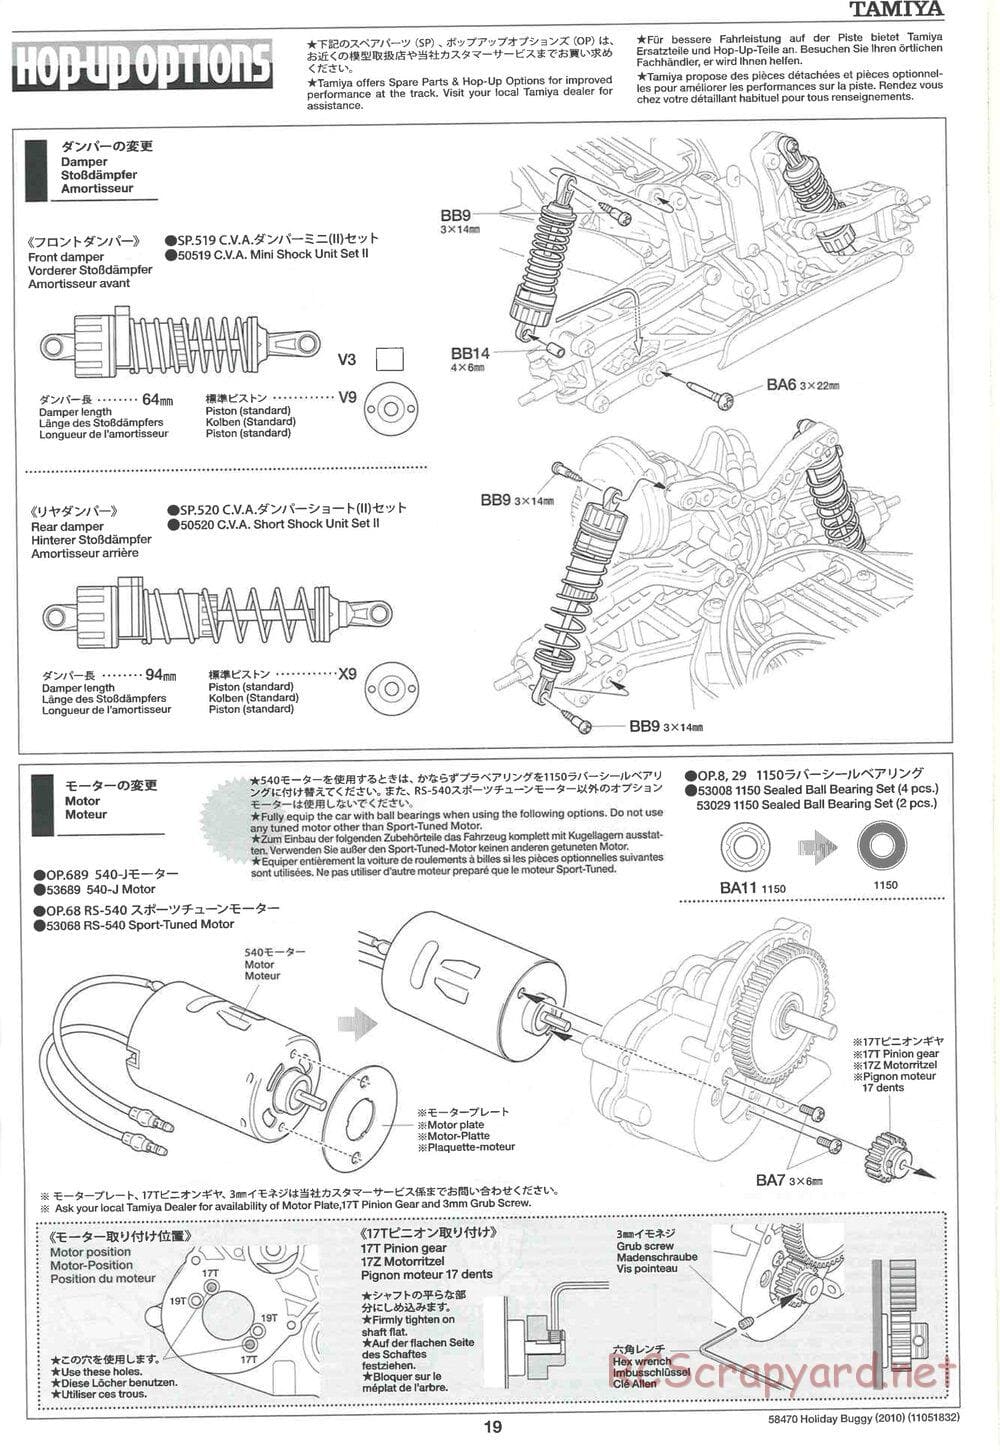 Tamiya - Holiday Buggy 2010 Chassis - Manual - Page 19